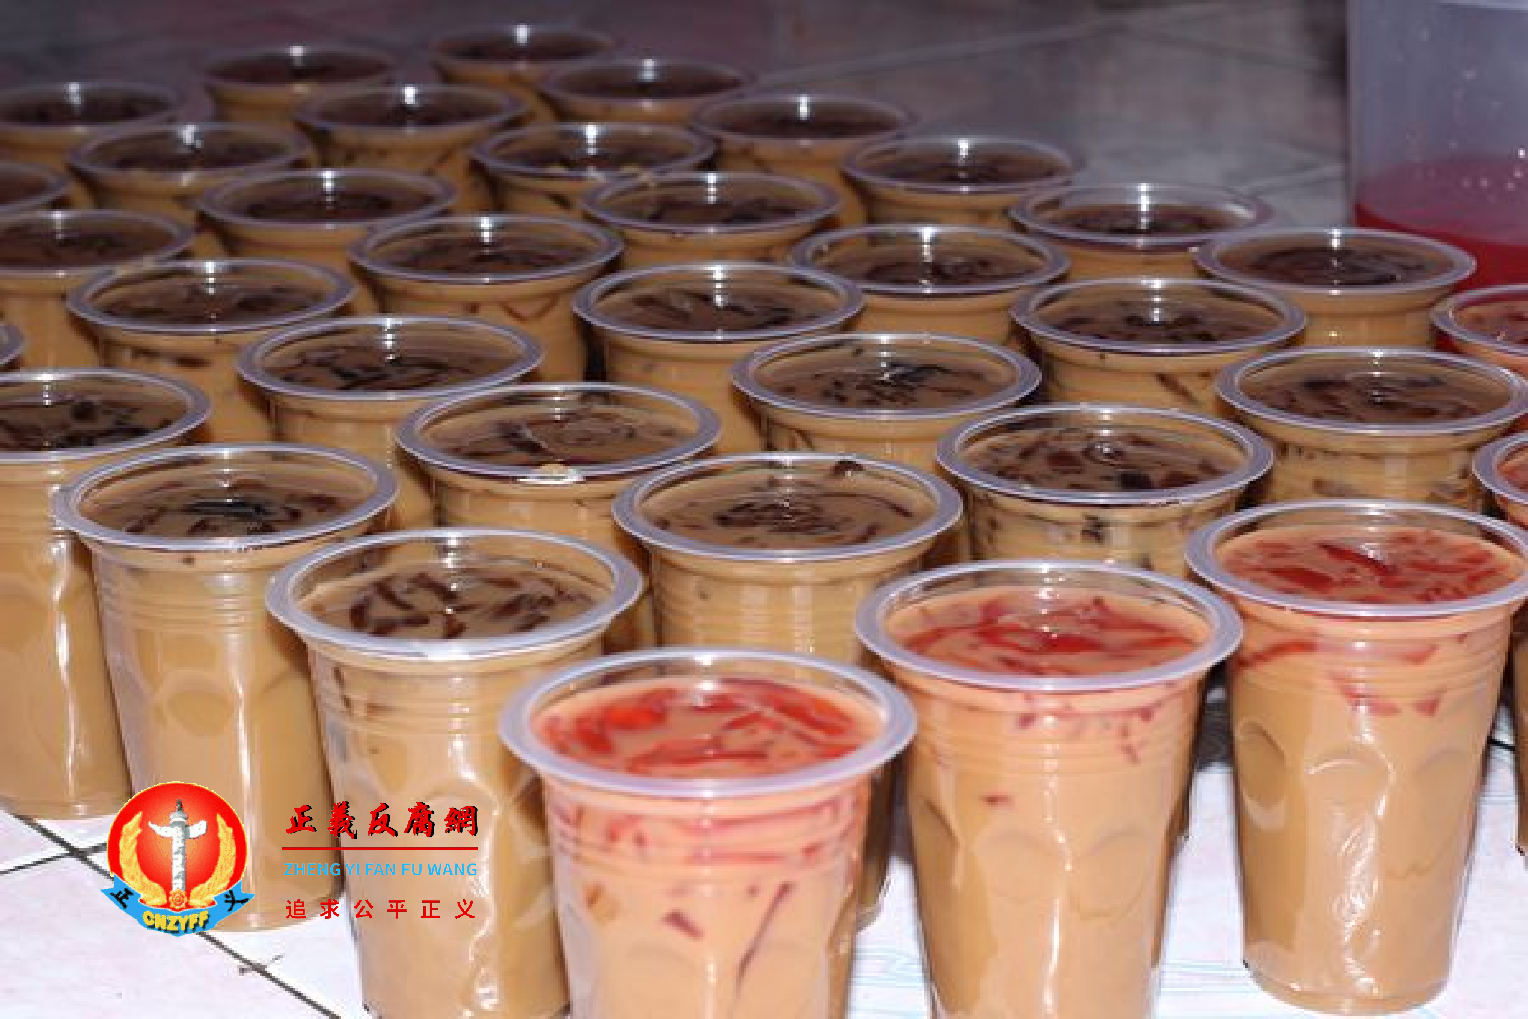 中国珍珠奶茶连锁店在港上市 首日股价暴跌